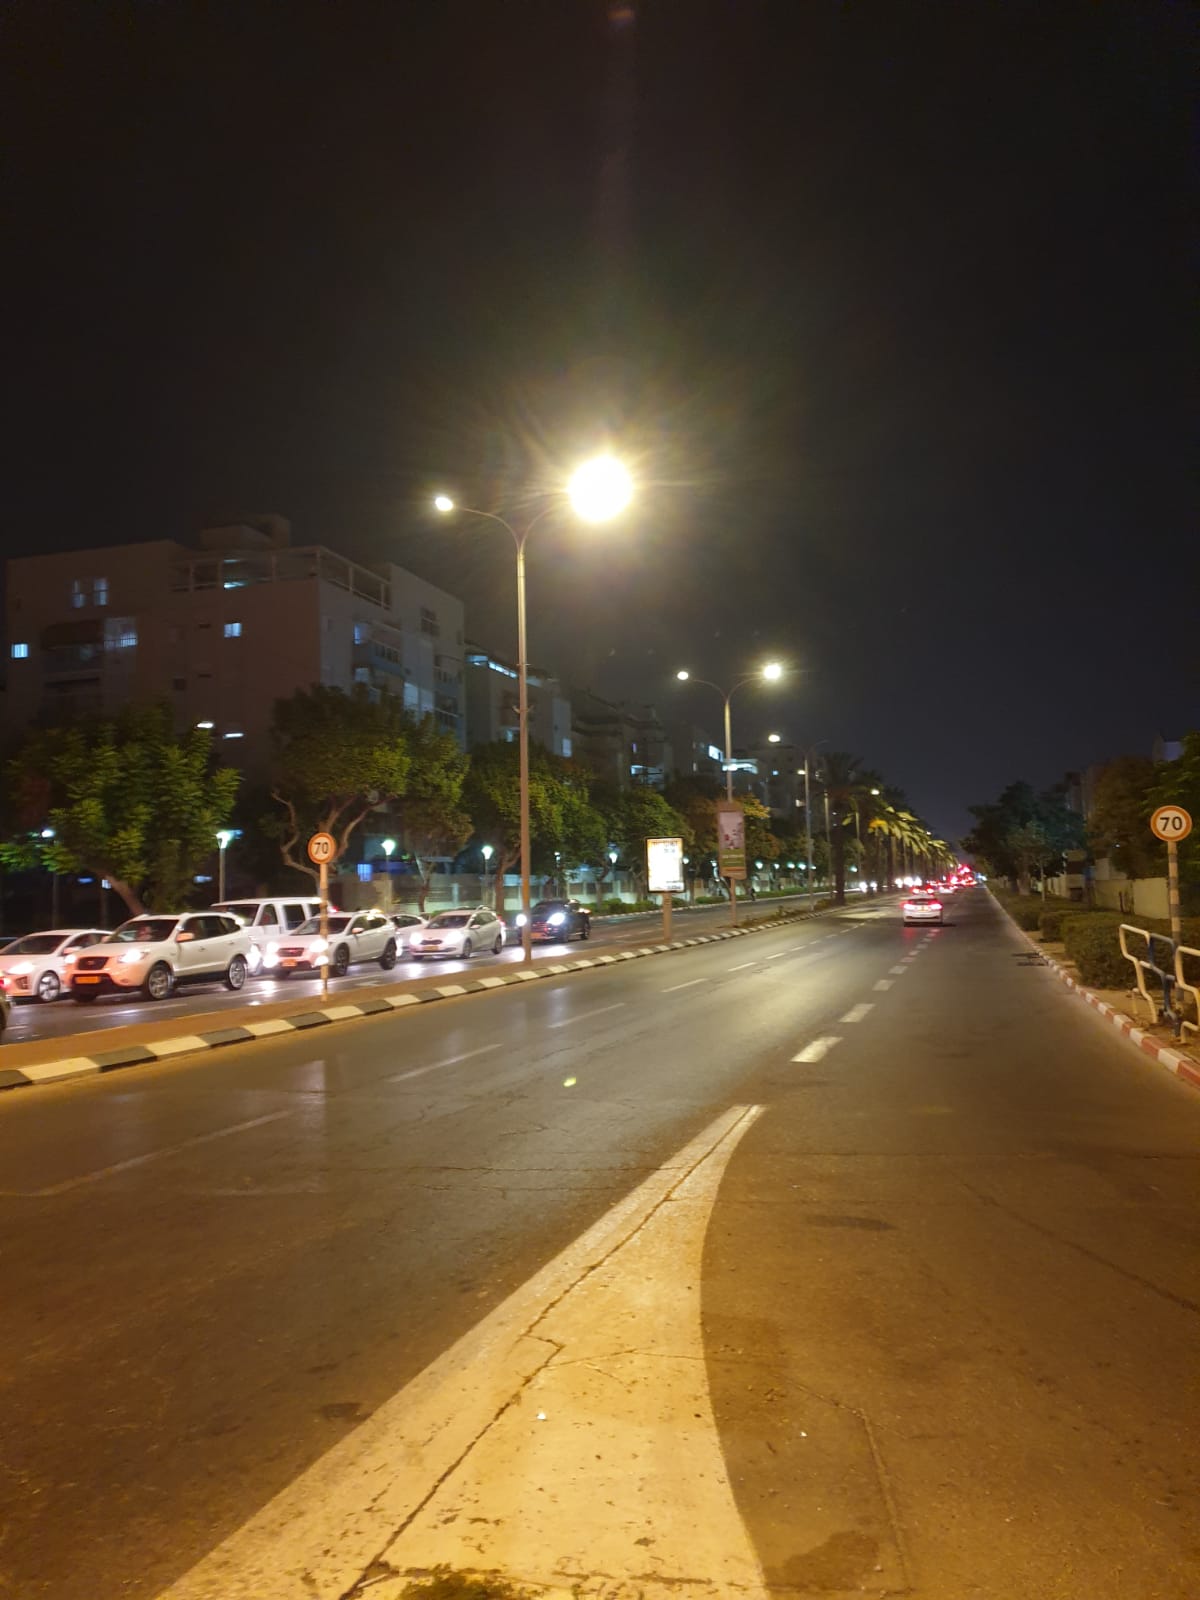  צילום: עיריית אשדוד